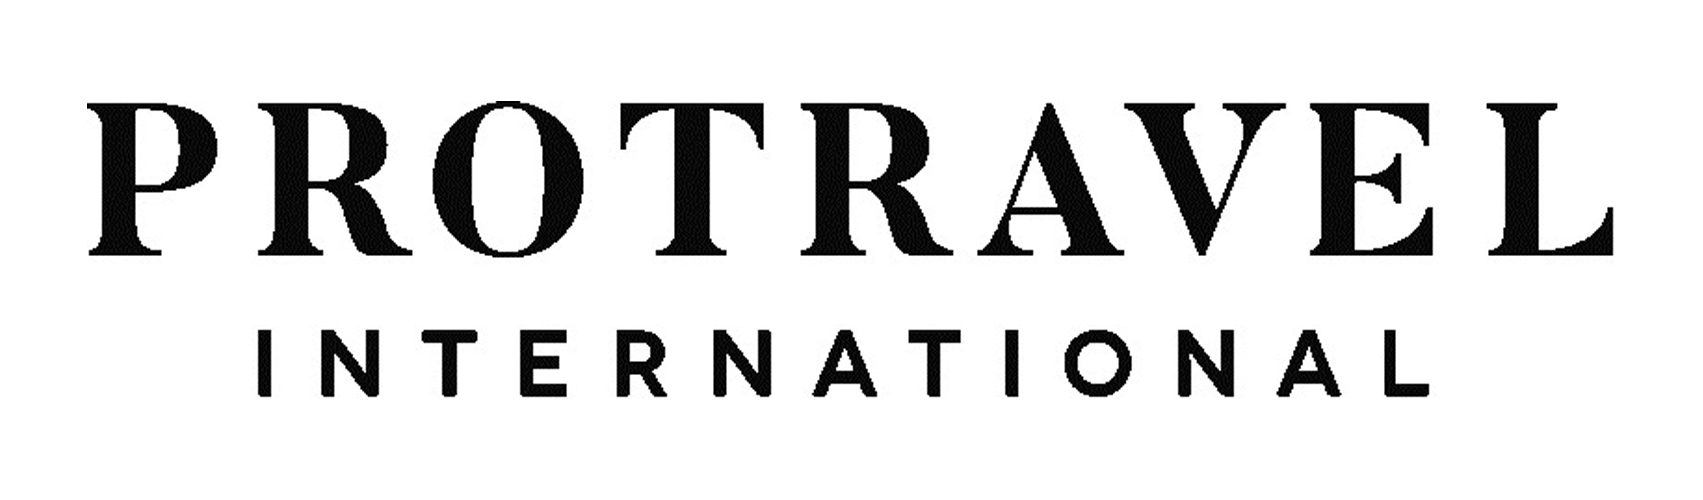 Protravel international logo